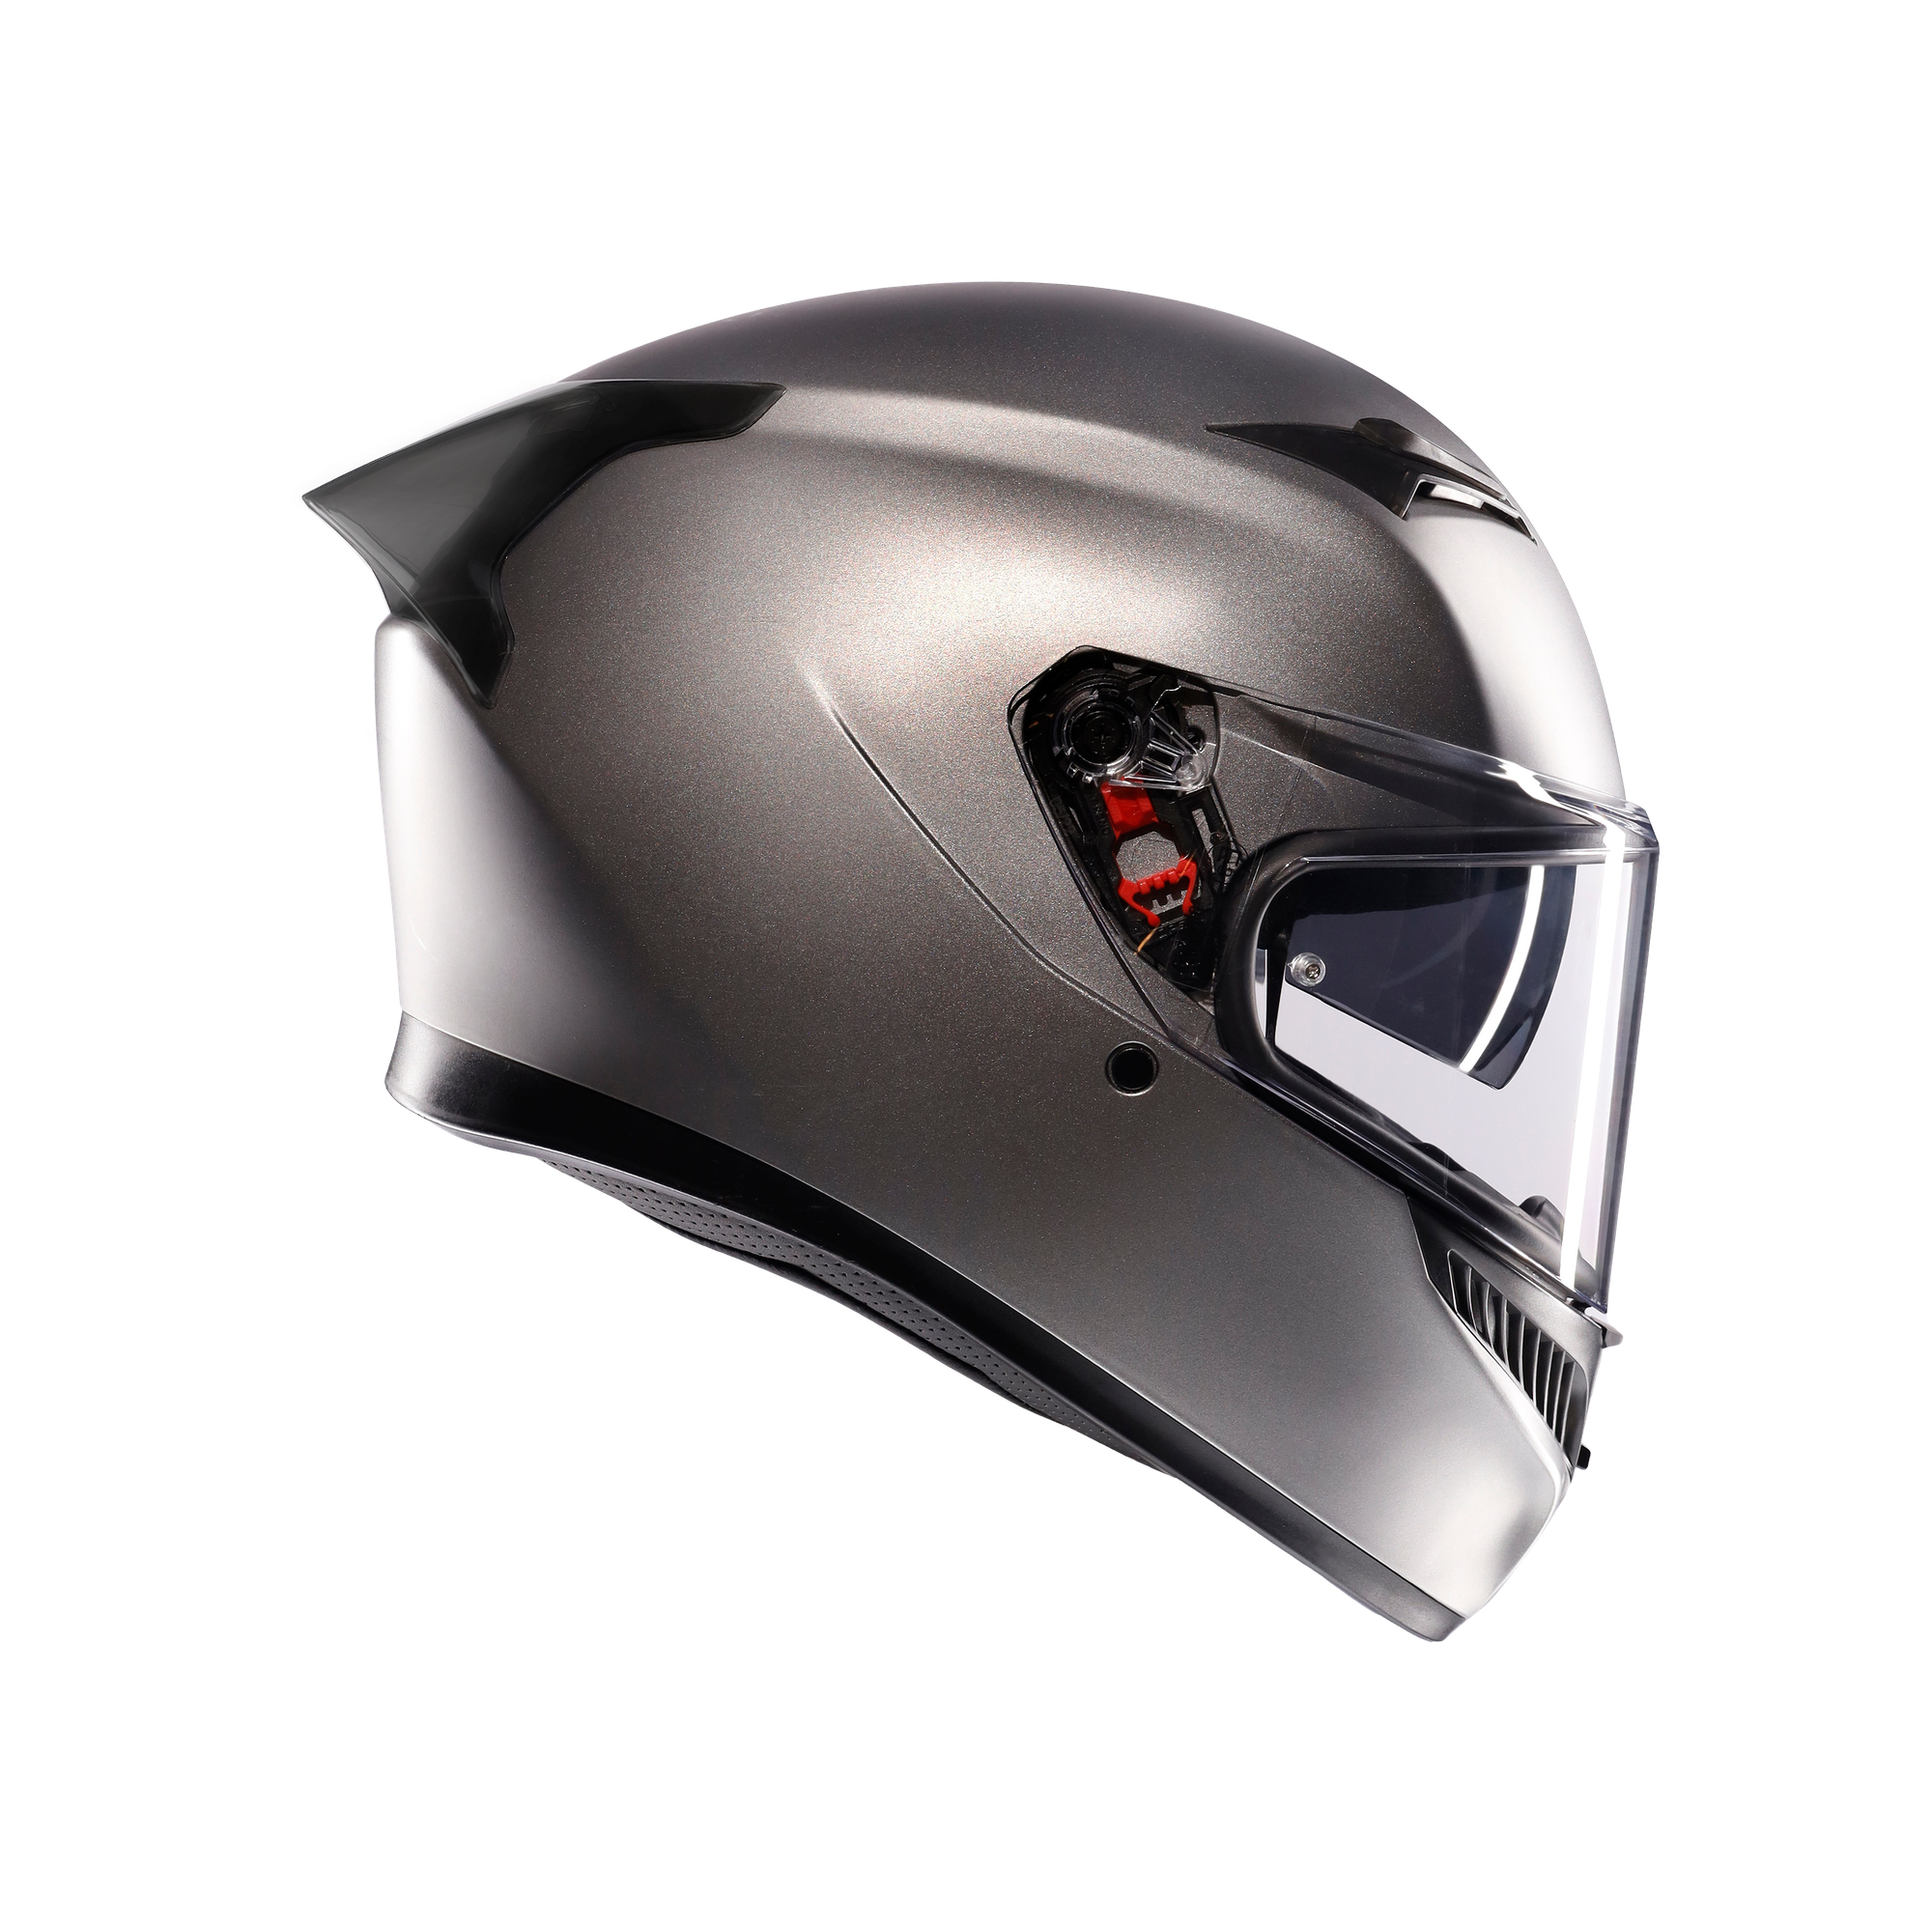 フルフェイスヘルメット | K3 AGV JIST MPLK Asian Fit 006-RODIO GREY MATT SG認証